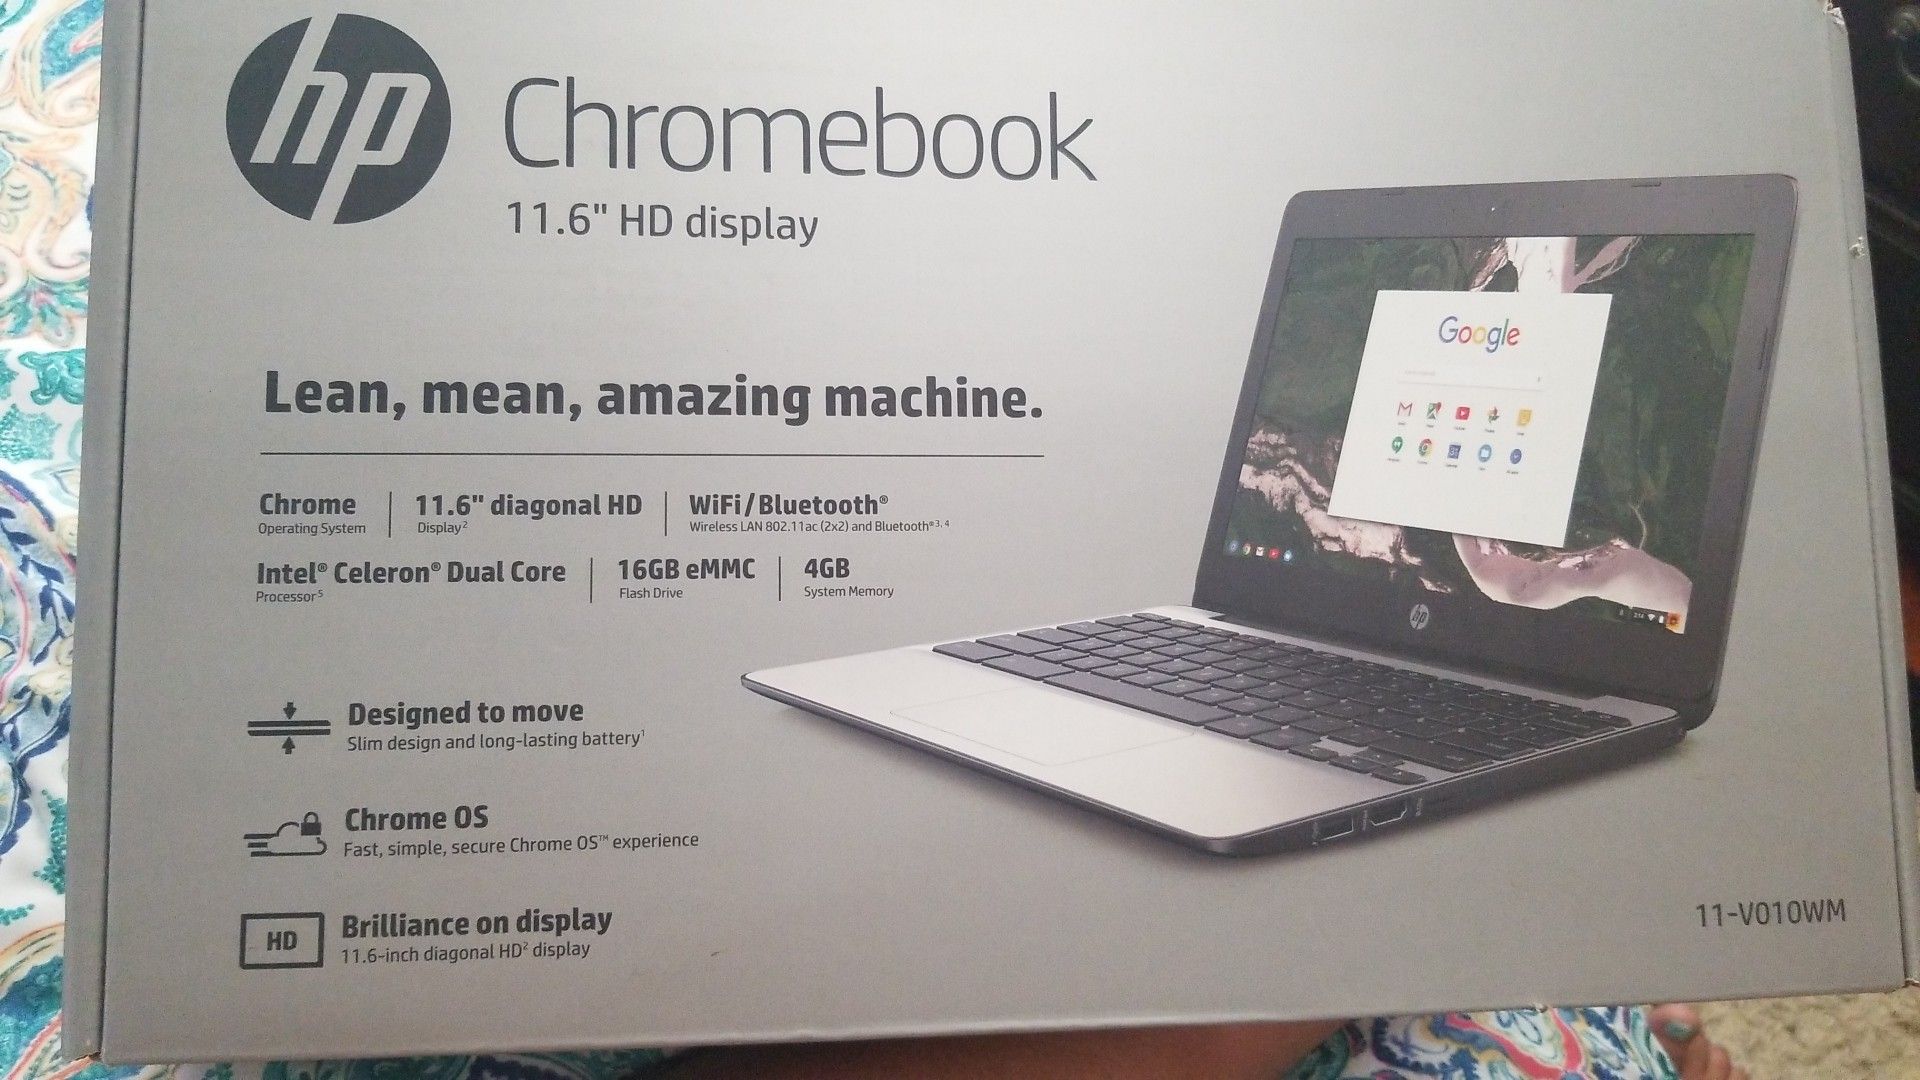 Chromebook 11.6HD display